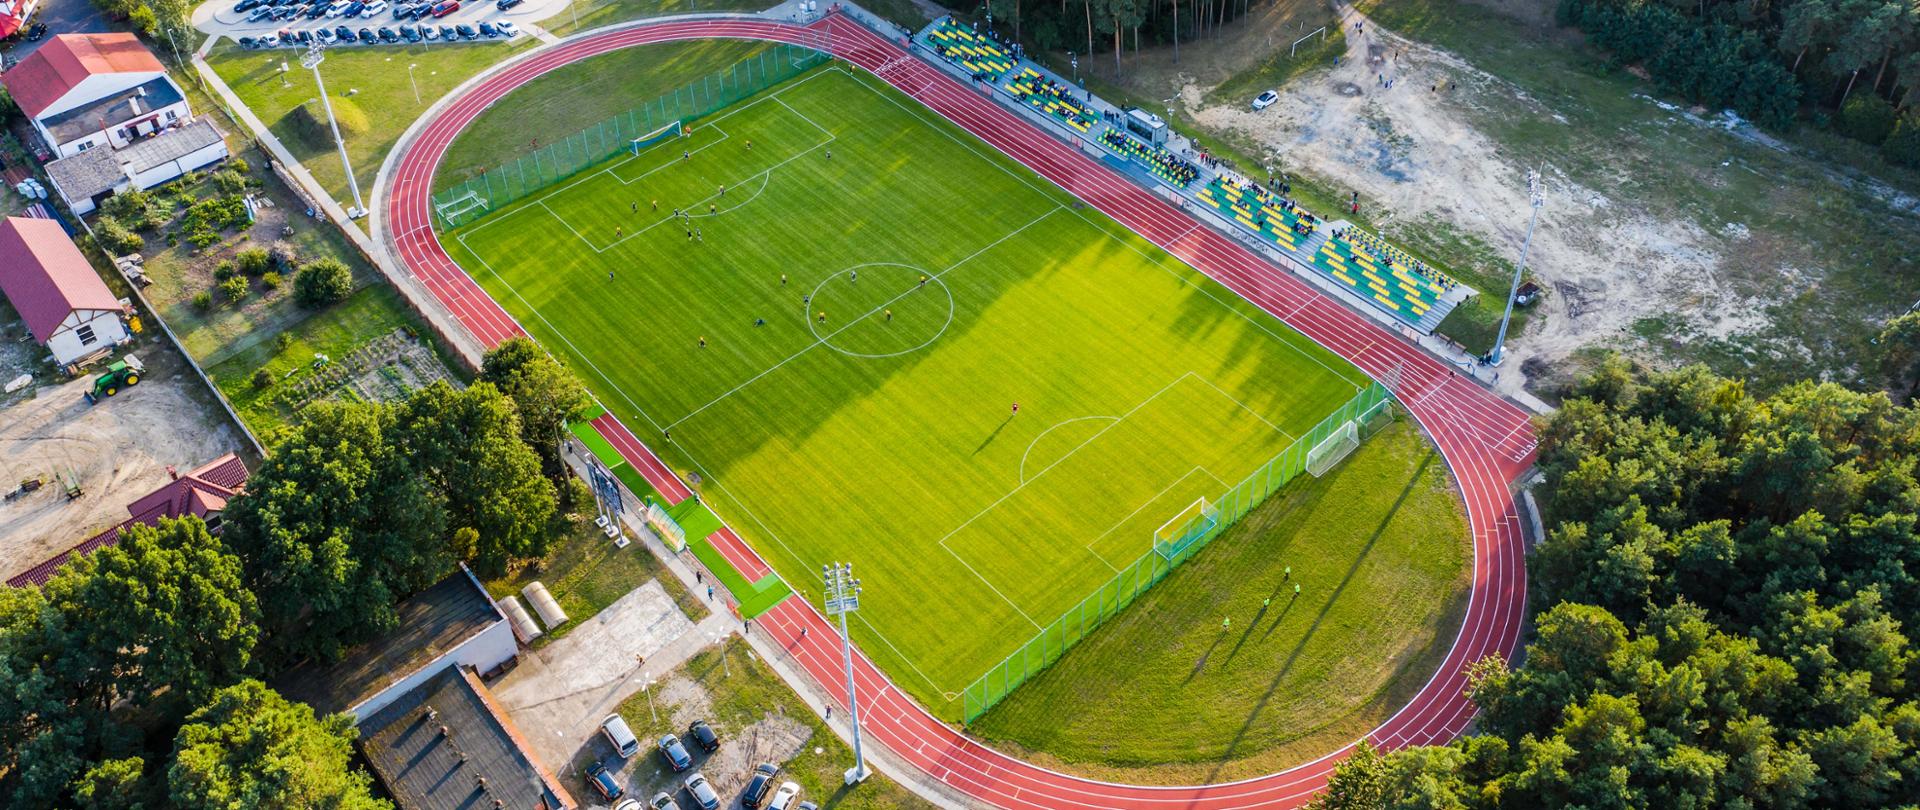 Widok z góry na stadion, boisko piłkarskie otoczone bieżnią lekkoatletyczną